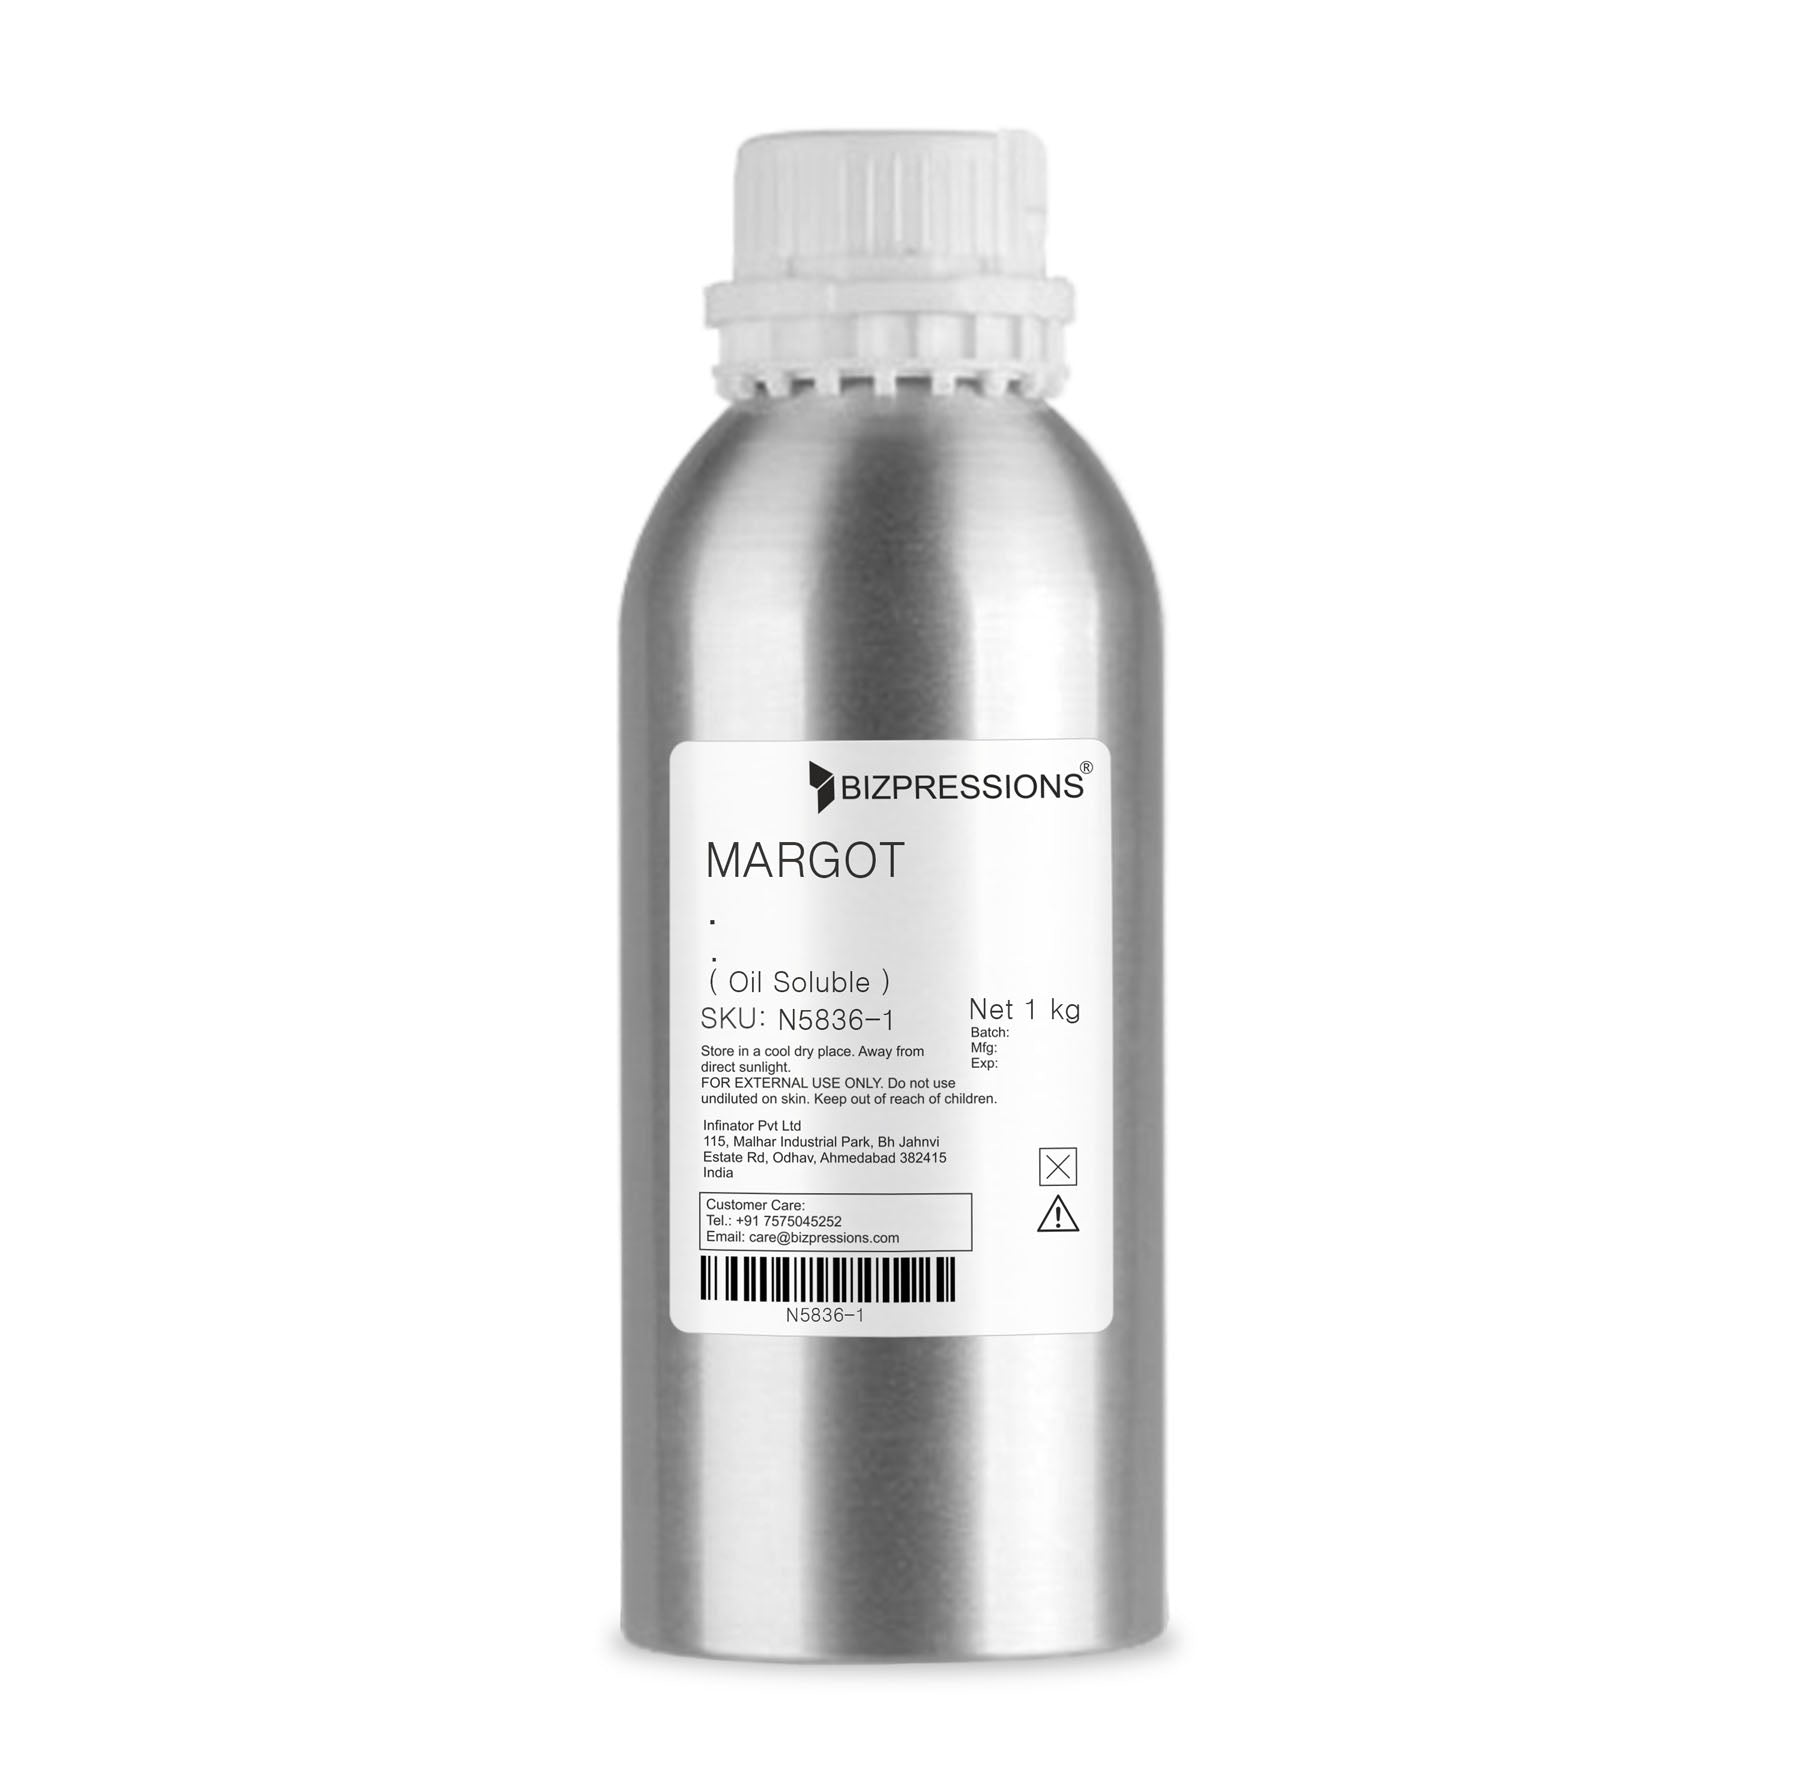 MARGOT - Fragrance ( Oil Soluble ) - 1 kg